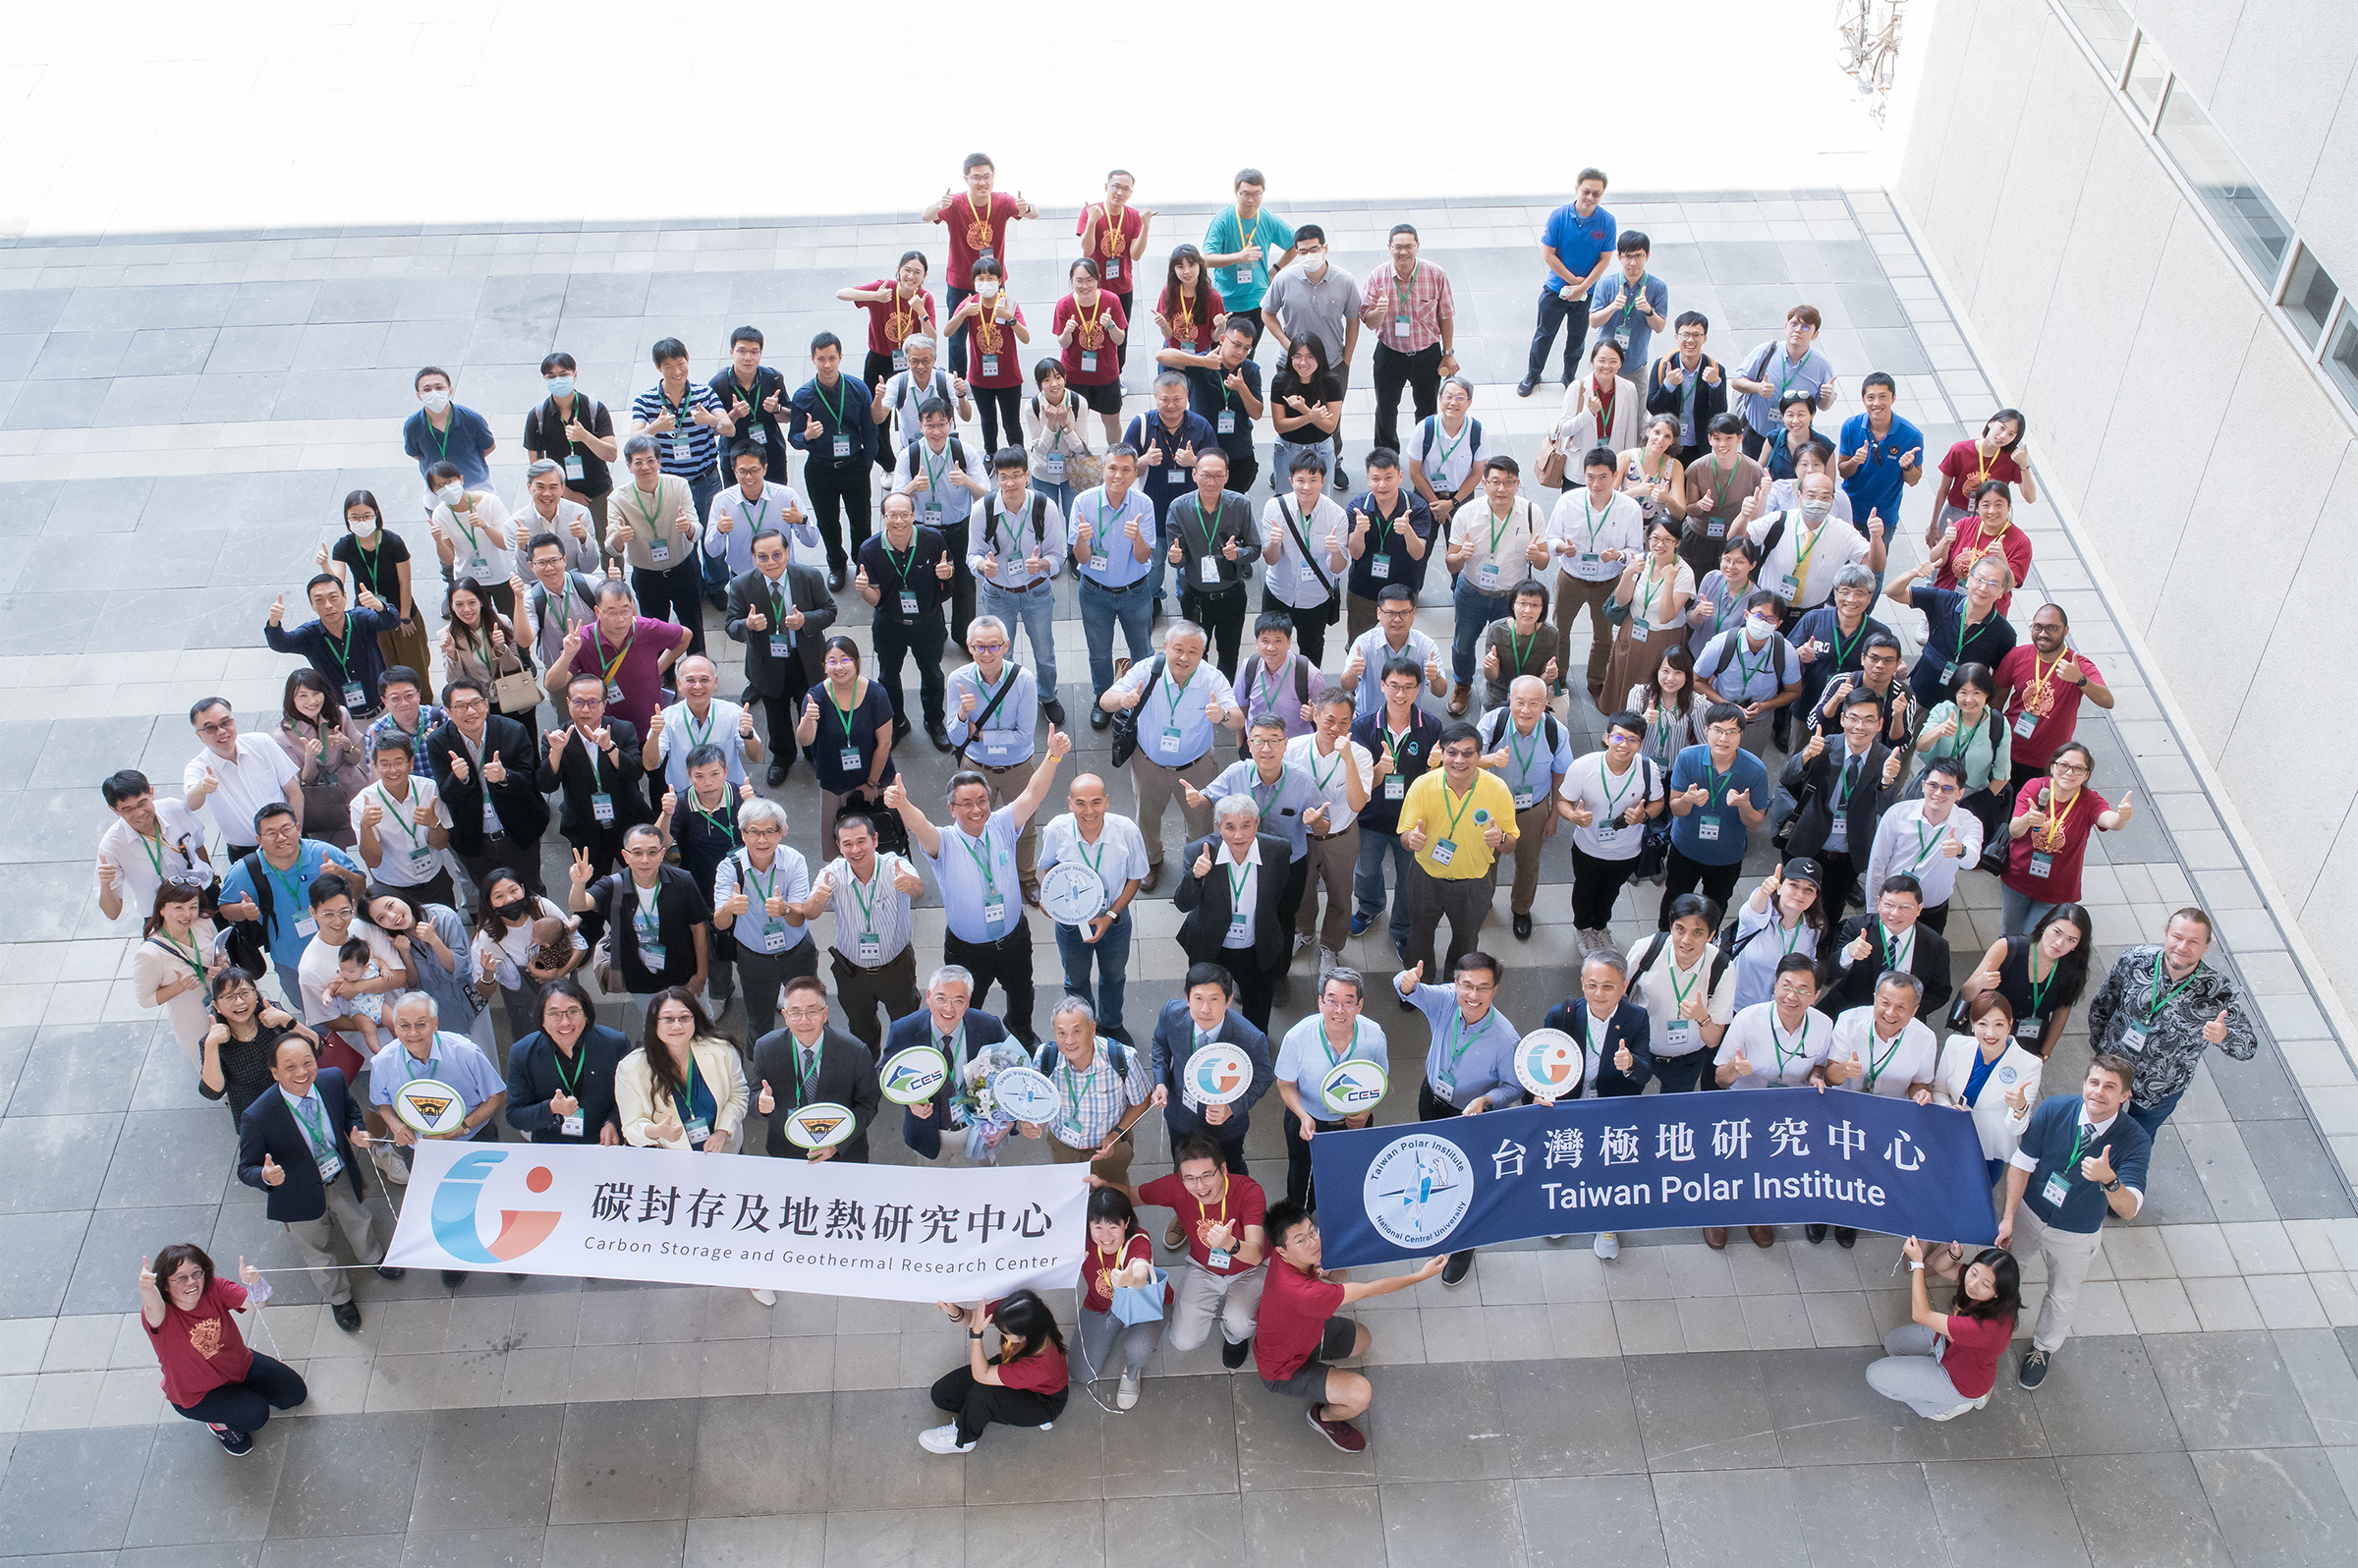 9月11日開學的第一天，中央大學舉行「碳封存及地熱研究中心」暨「台灣極地研究中心」揭牌典禮，各界貴賓雲集。照片地科學院提供